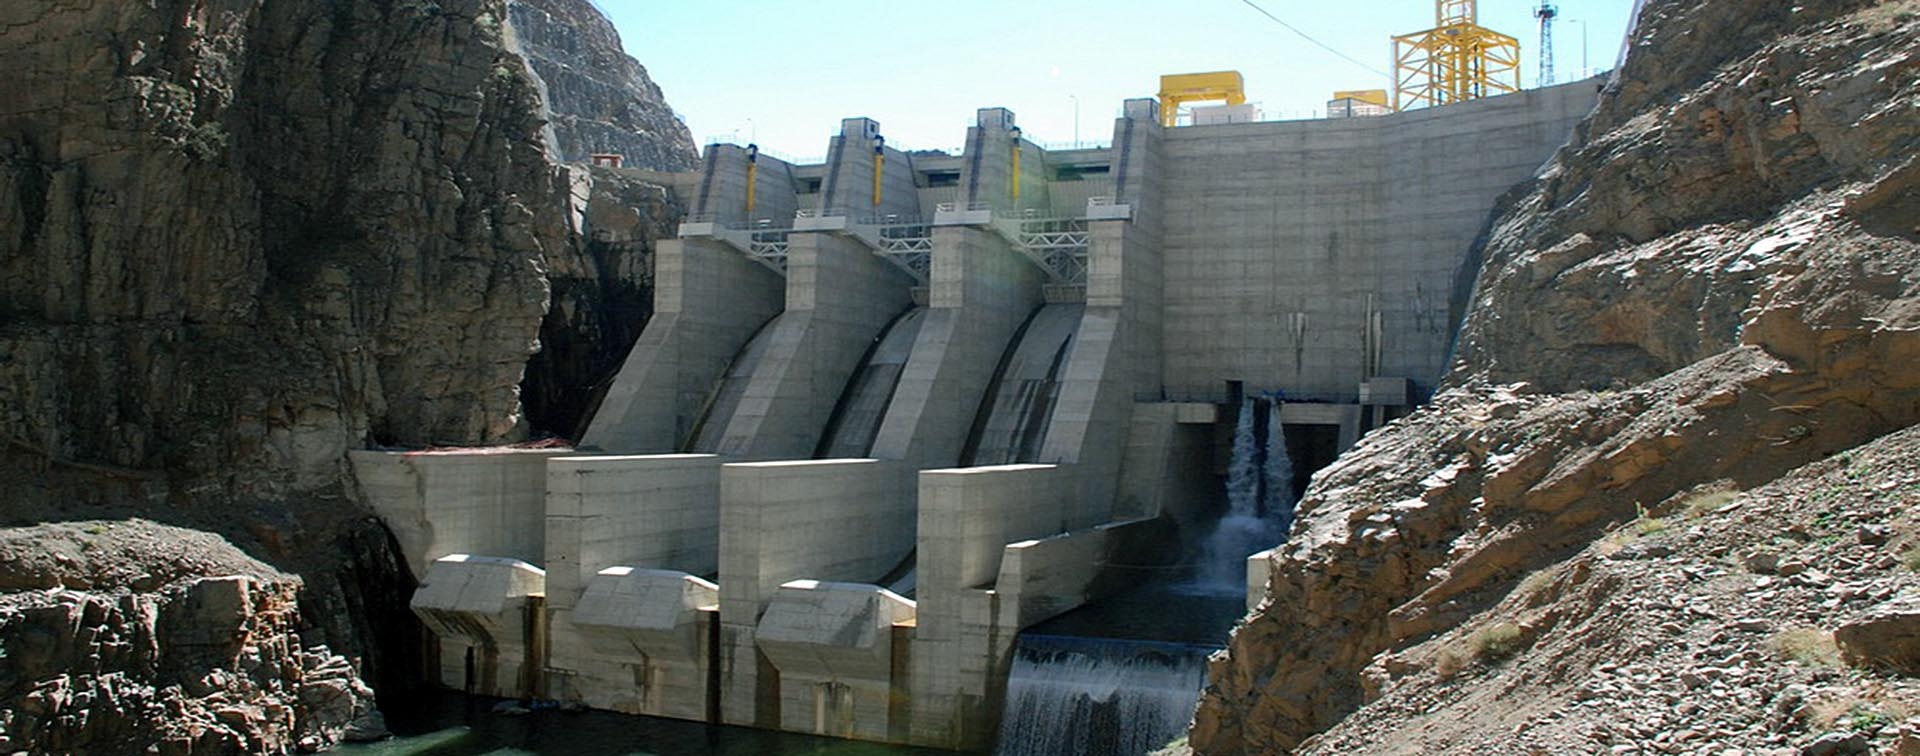 Güllübağ RCC Barajı ve H.E.S. (96 MW)